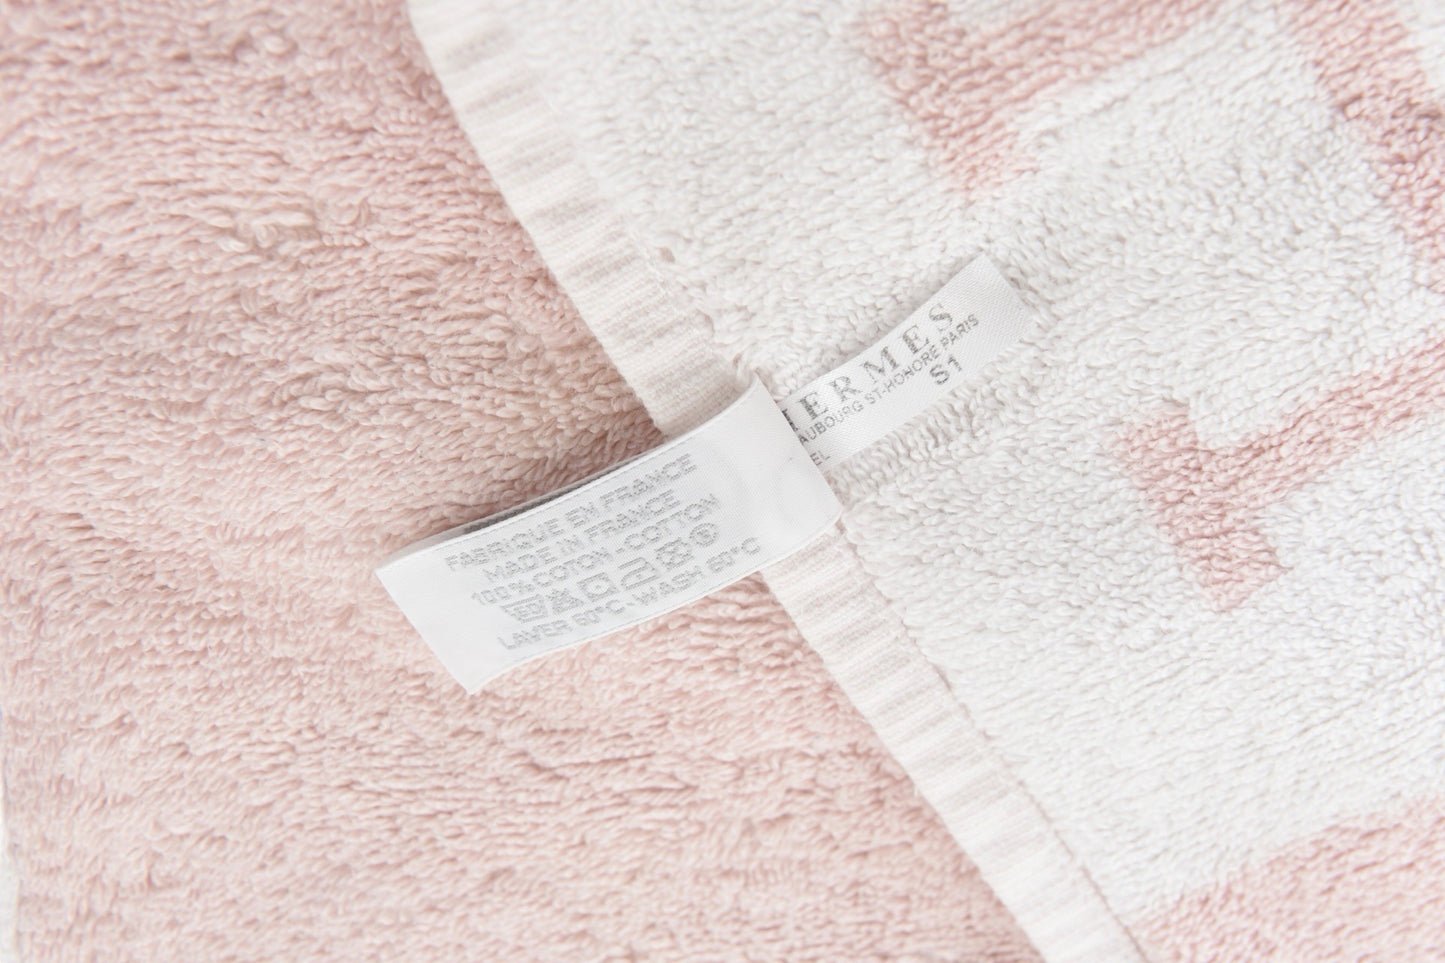 Hermès Avalon Towel Pink White Cotton